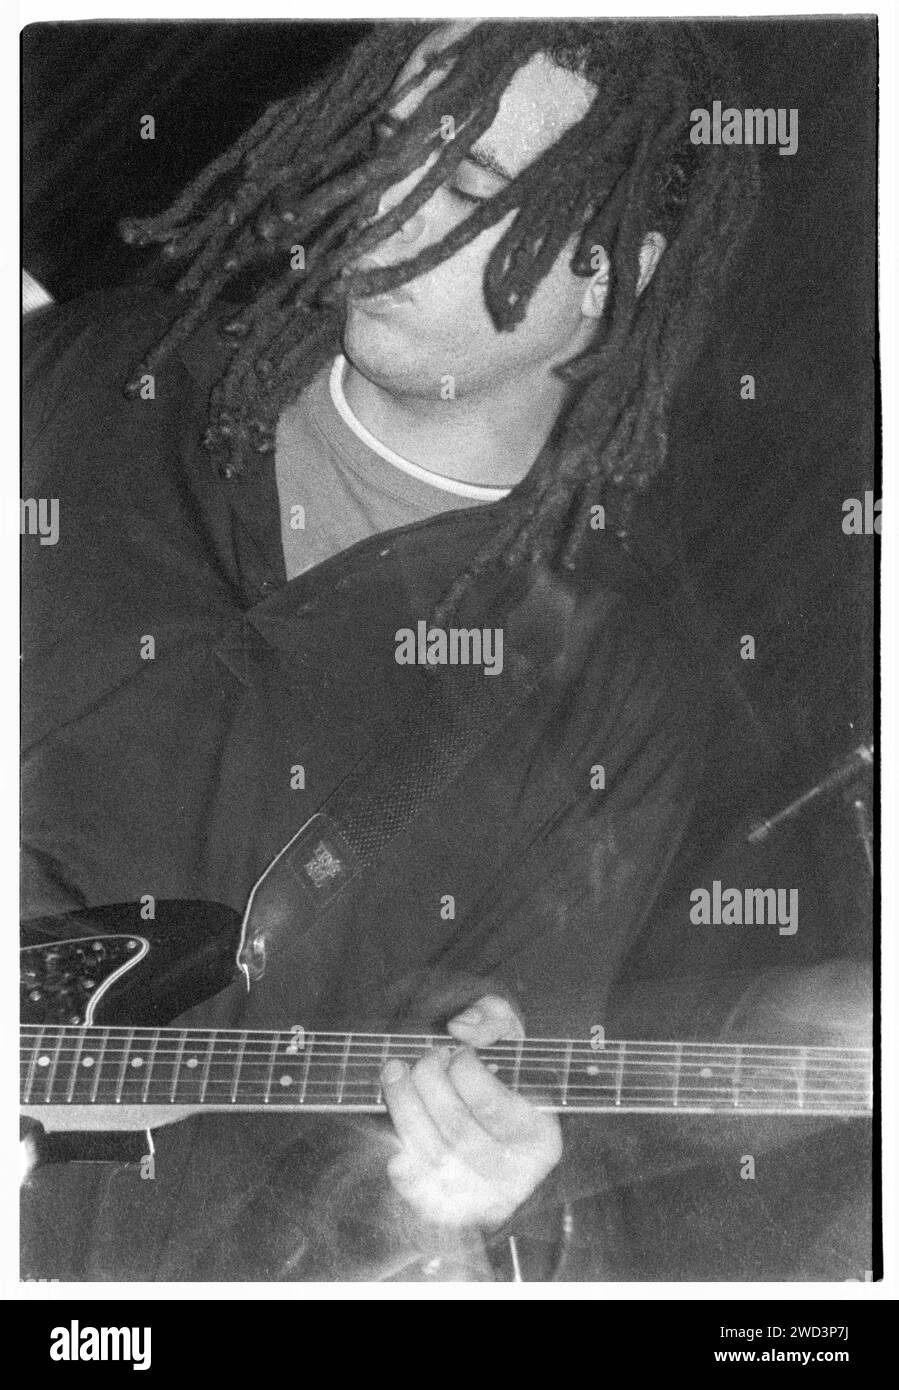 Adam Franklin de Swervedriver jouant en direct à l'Université de Bristol Anson Rooms, Bristol, Angleterre le 27 octobre 1993. Photo : Rob Watkins. INFO : Swervedriver, un groupe de rock alternatif britannique formé en 1989, est connu pour ses influences shoegaze et Dream-pop. Des albums comme 'Raise' et 'Mezcal Head' ont mis en valeur leur son de guitare tourbillonnant et l'écriture dynamique de chansons, ce qui en fait des figures influentes dans la scène musicale alternative. Banque D'Images